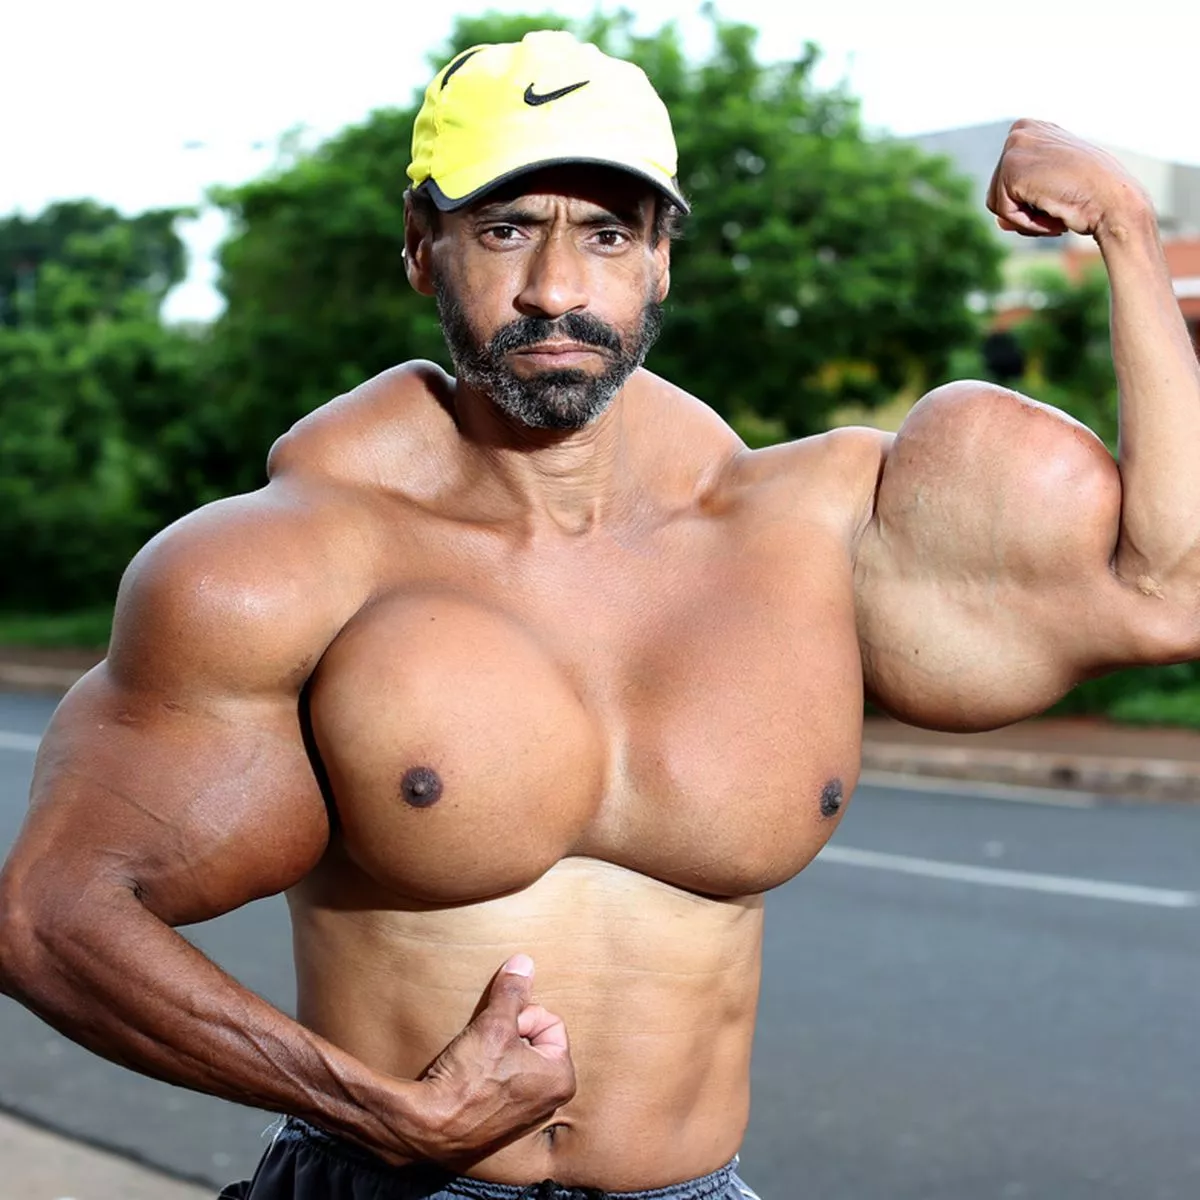 Valdir-flexed-his-huge-biceps.jpg